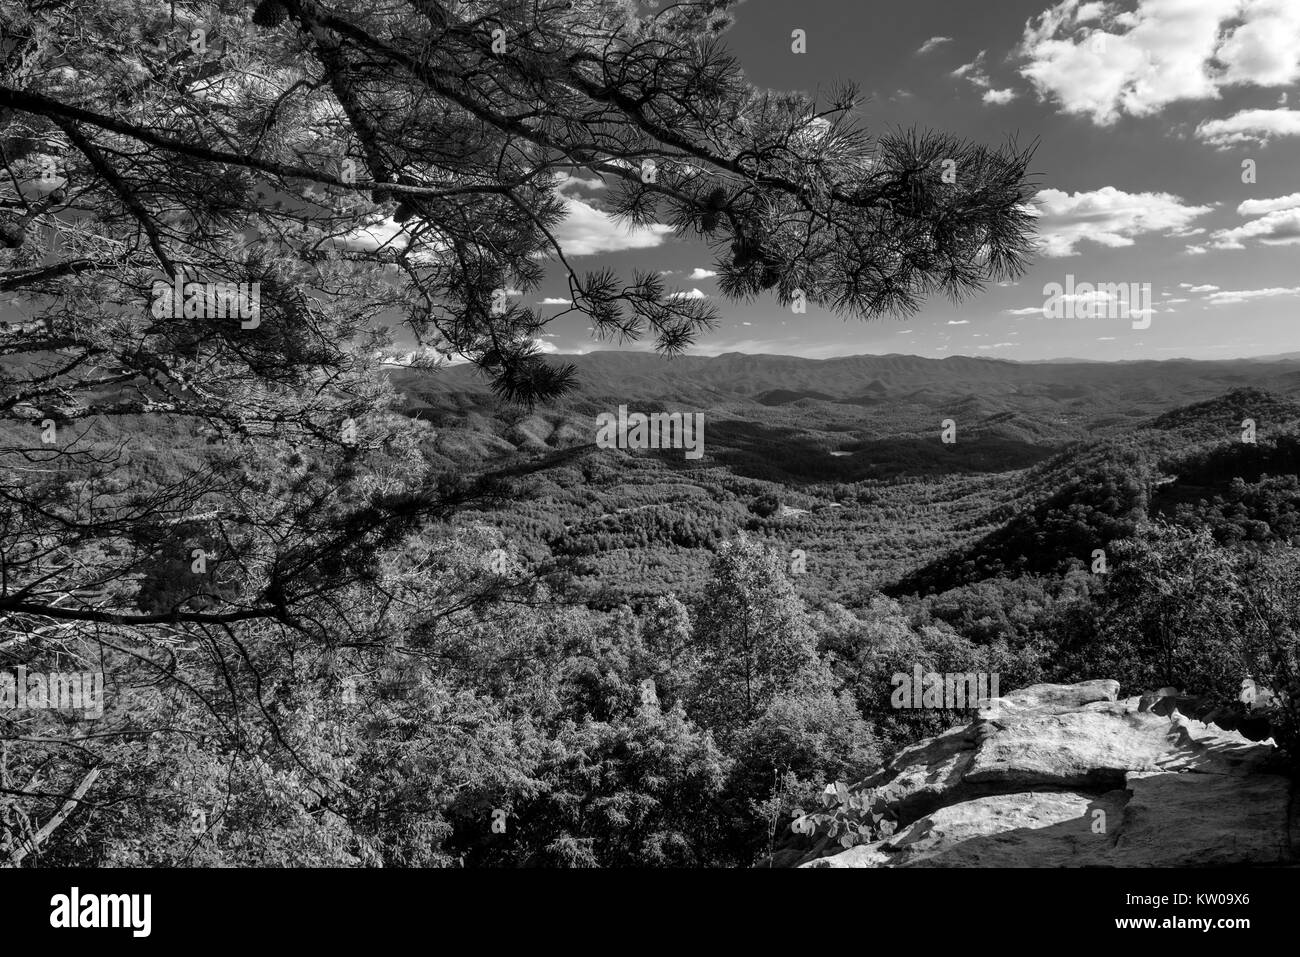 Un été vista vue depuis le look Rock de Foothills Parkway West de Great Smoky Mountains National Park, Tenneseee, USA Banque D'Images